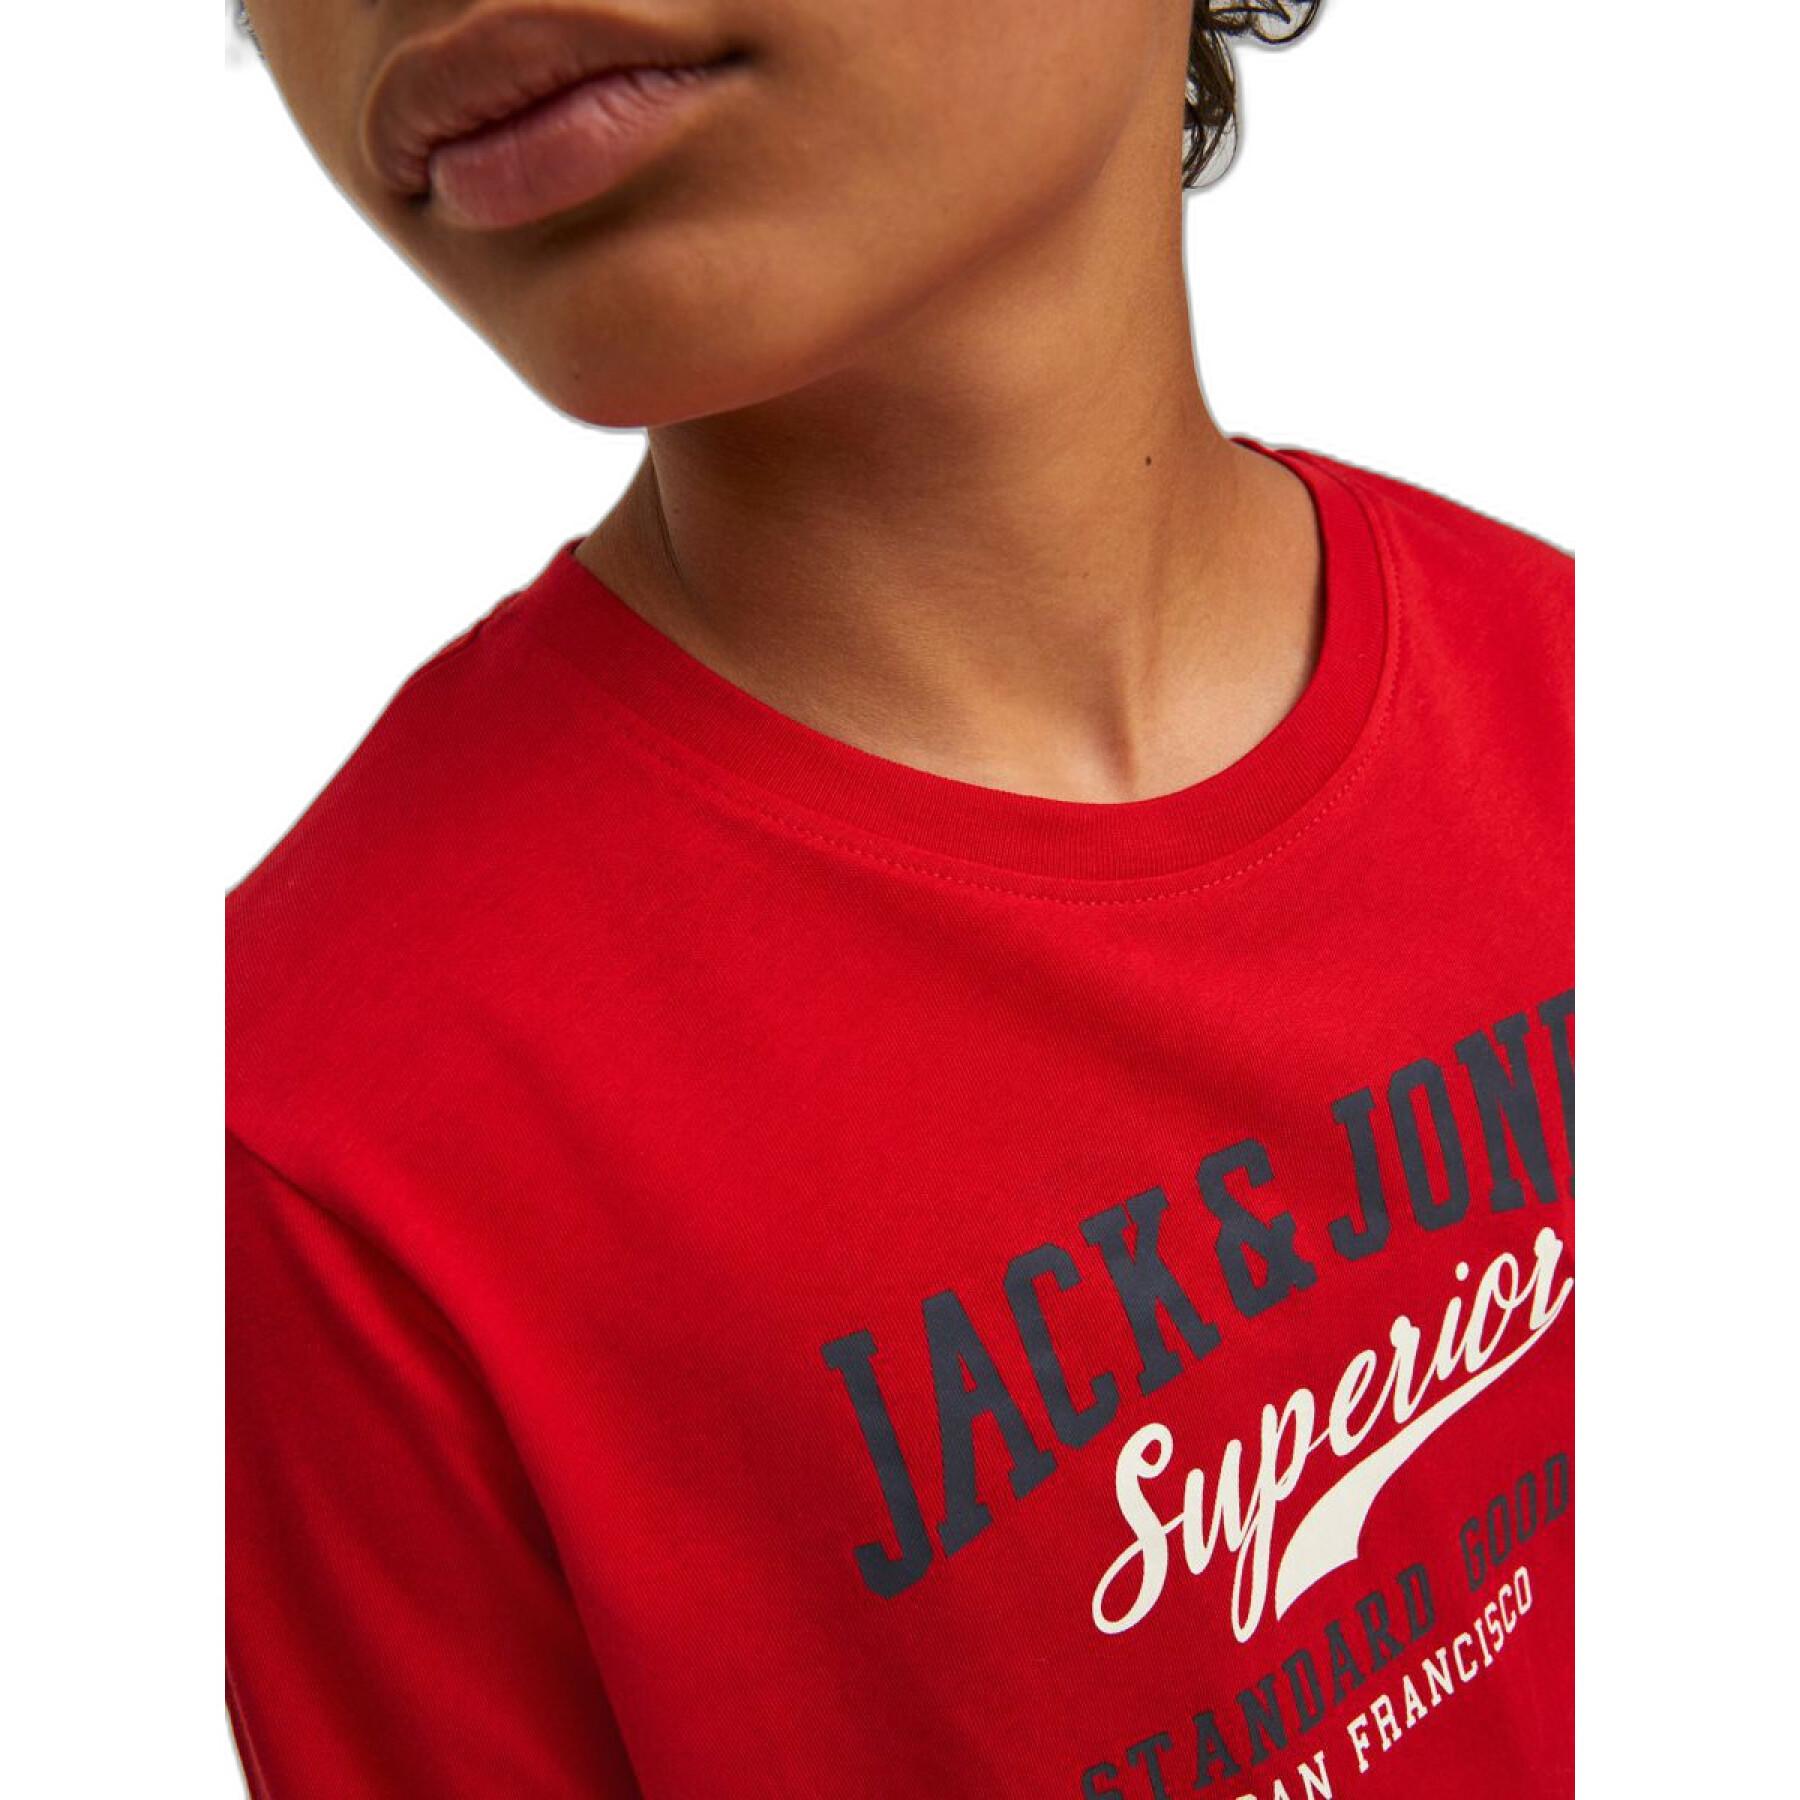 Koszulka dziecięca z długim rękawem Jack & Jones Logo